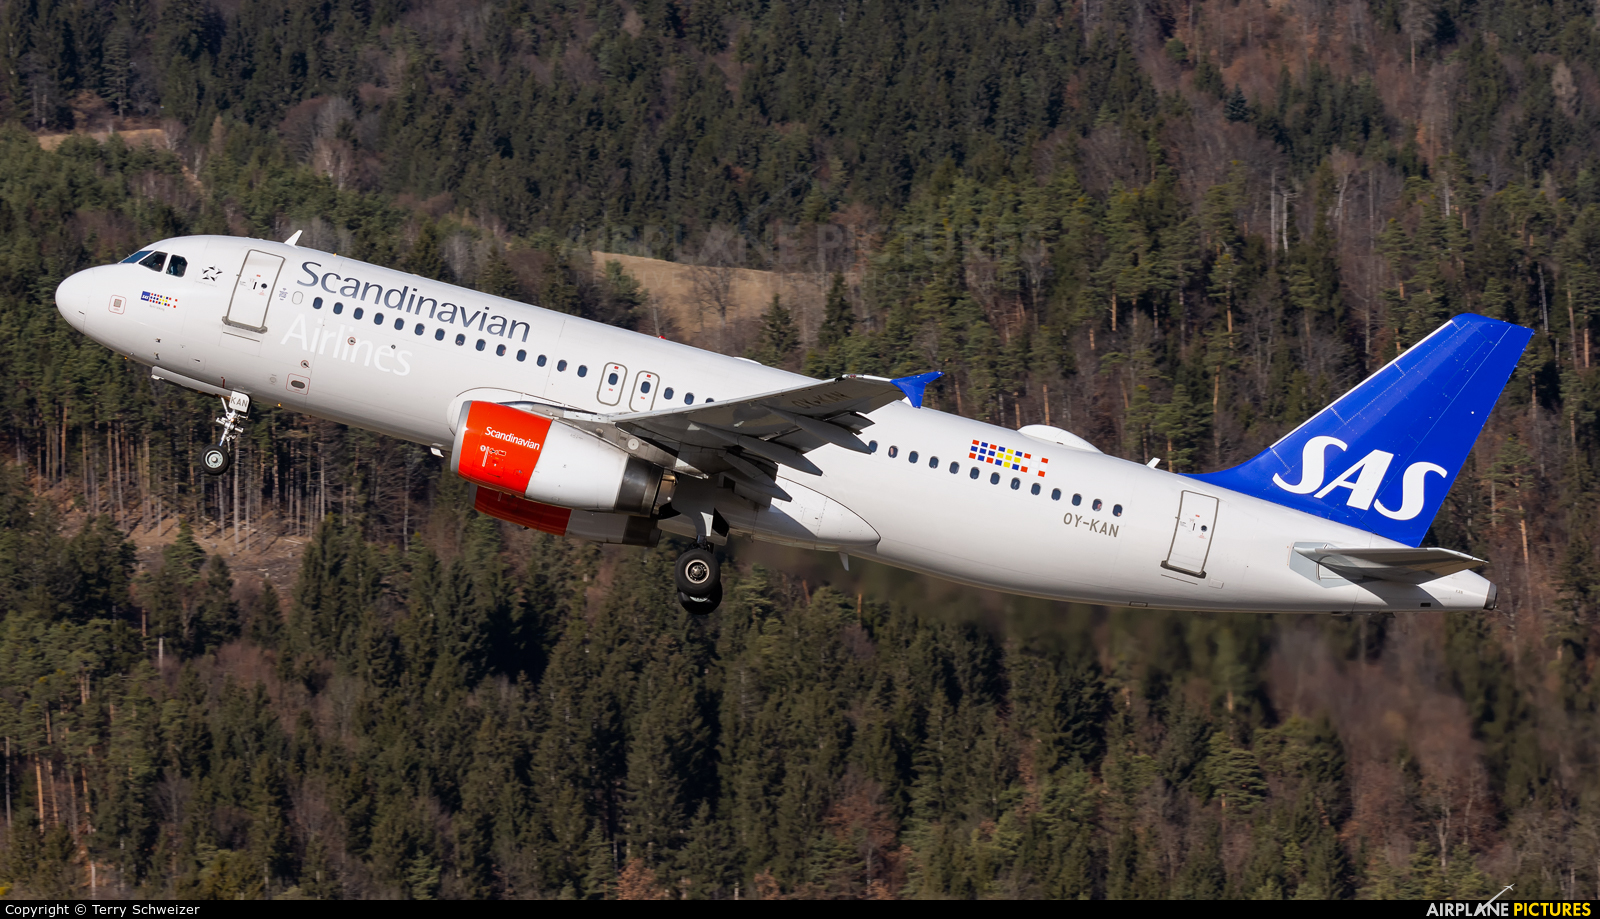 SAS - Scandinavian Airlines OY-KAN aircraft at Innsbruck